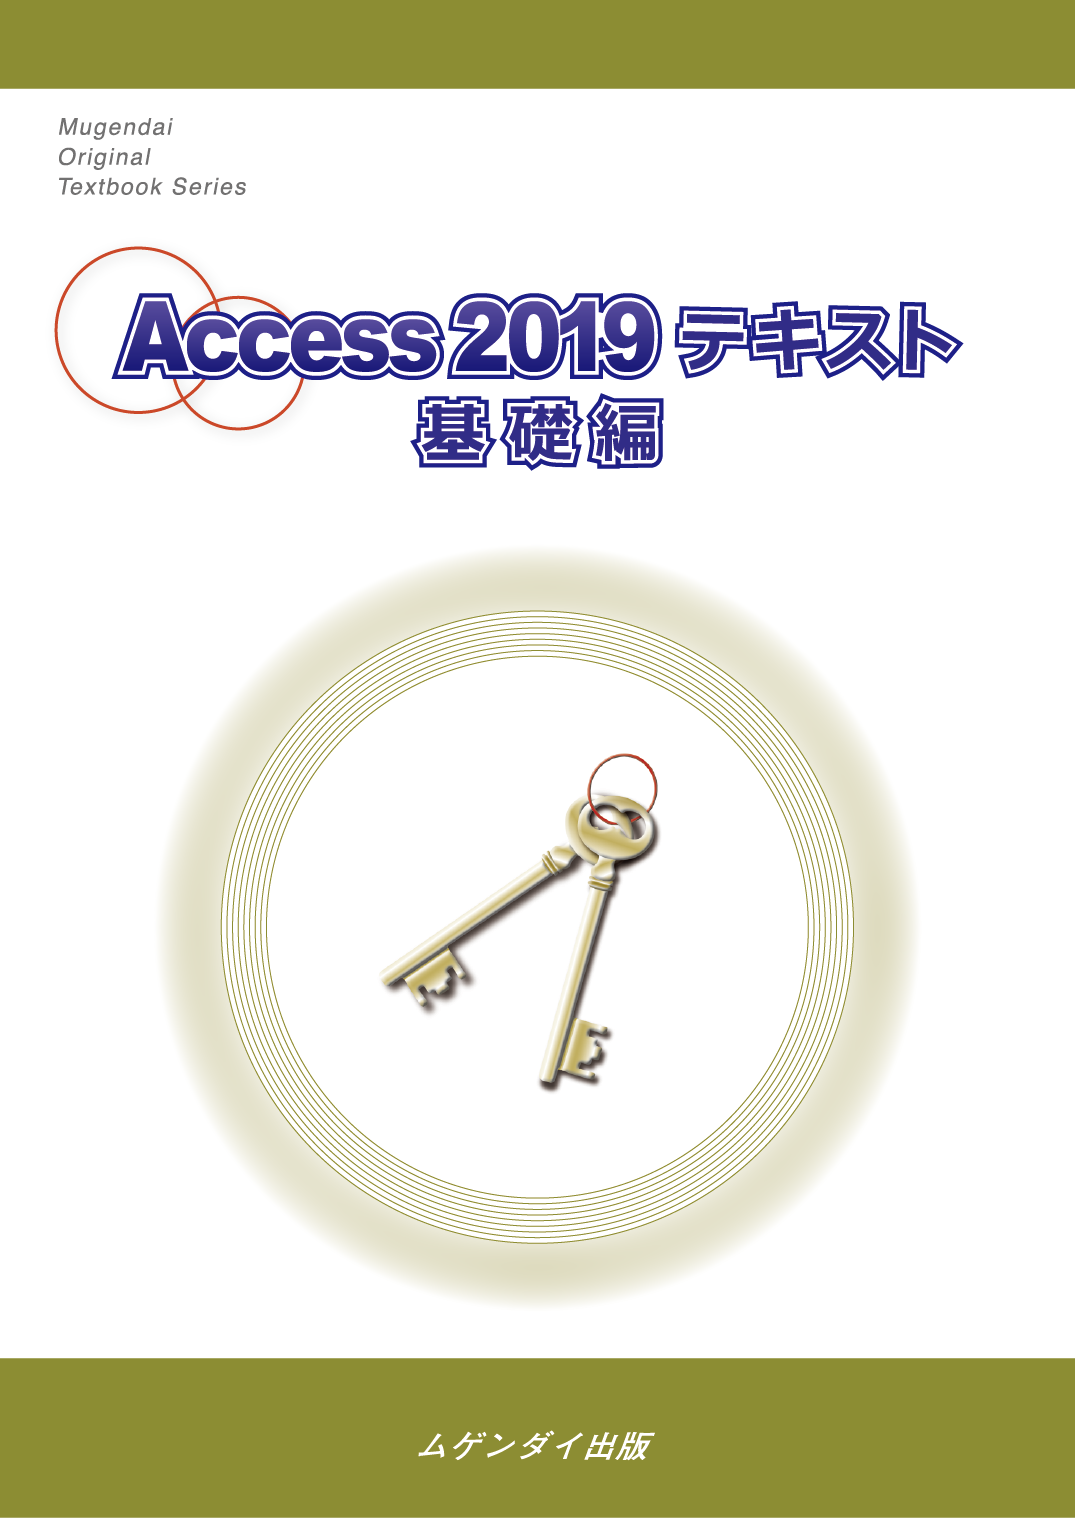 Access 2019 eLXg b